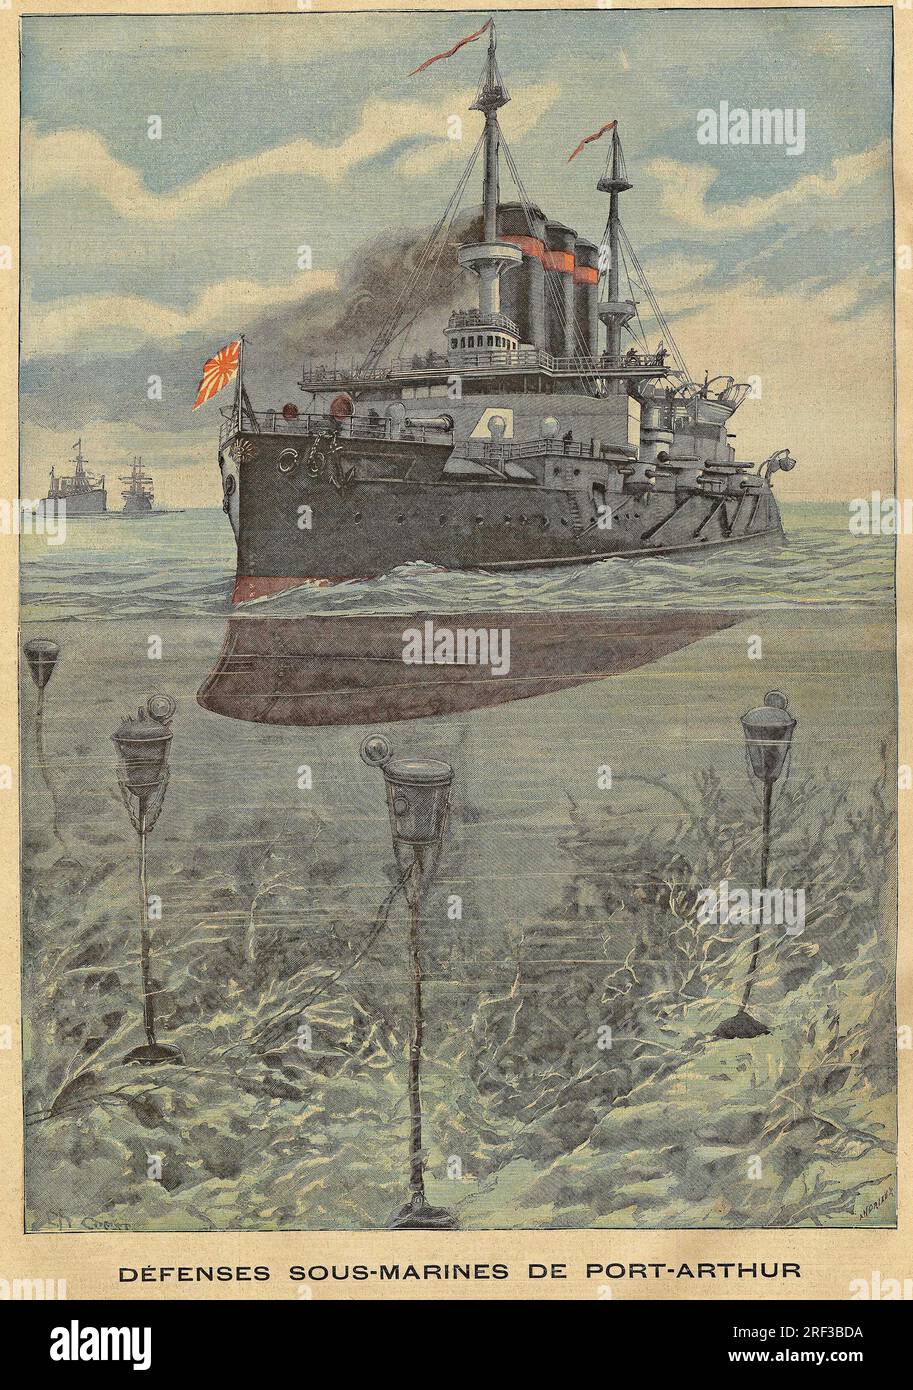 Guerre russo-japonaise (Guerre russo japonaise) : Vue des torpilles sous Marines a la base russe de Port Arthur. Gravure in 'Le Petit Parisien', le 12061904. Stockfoto